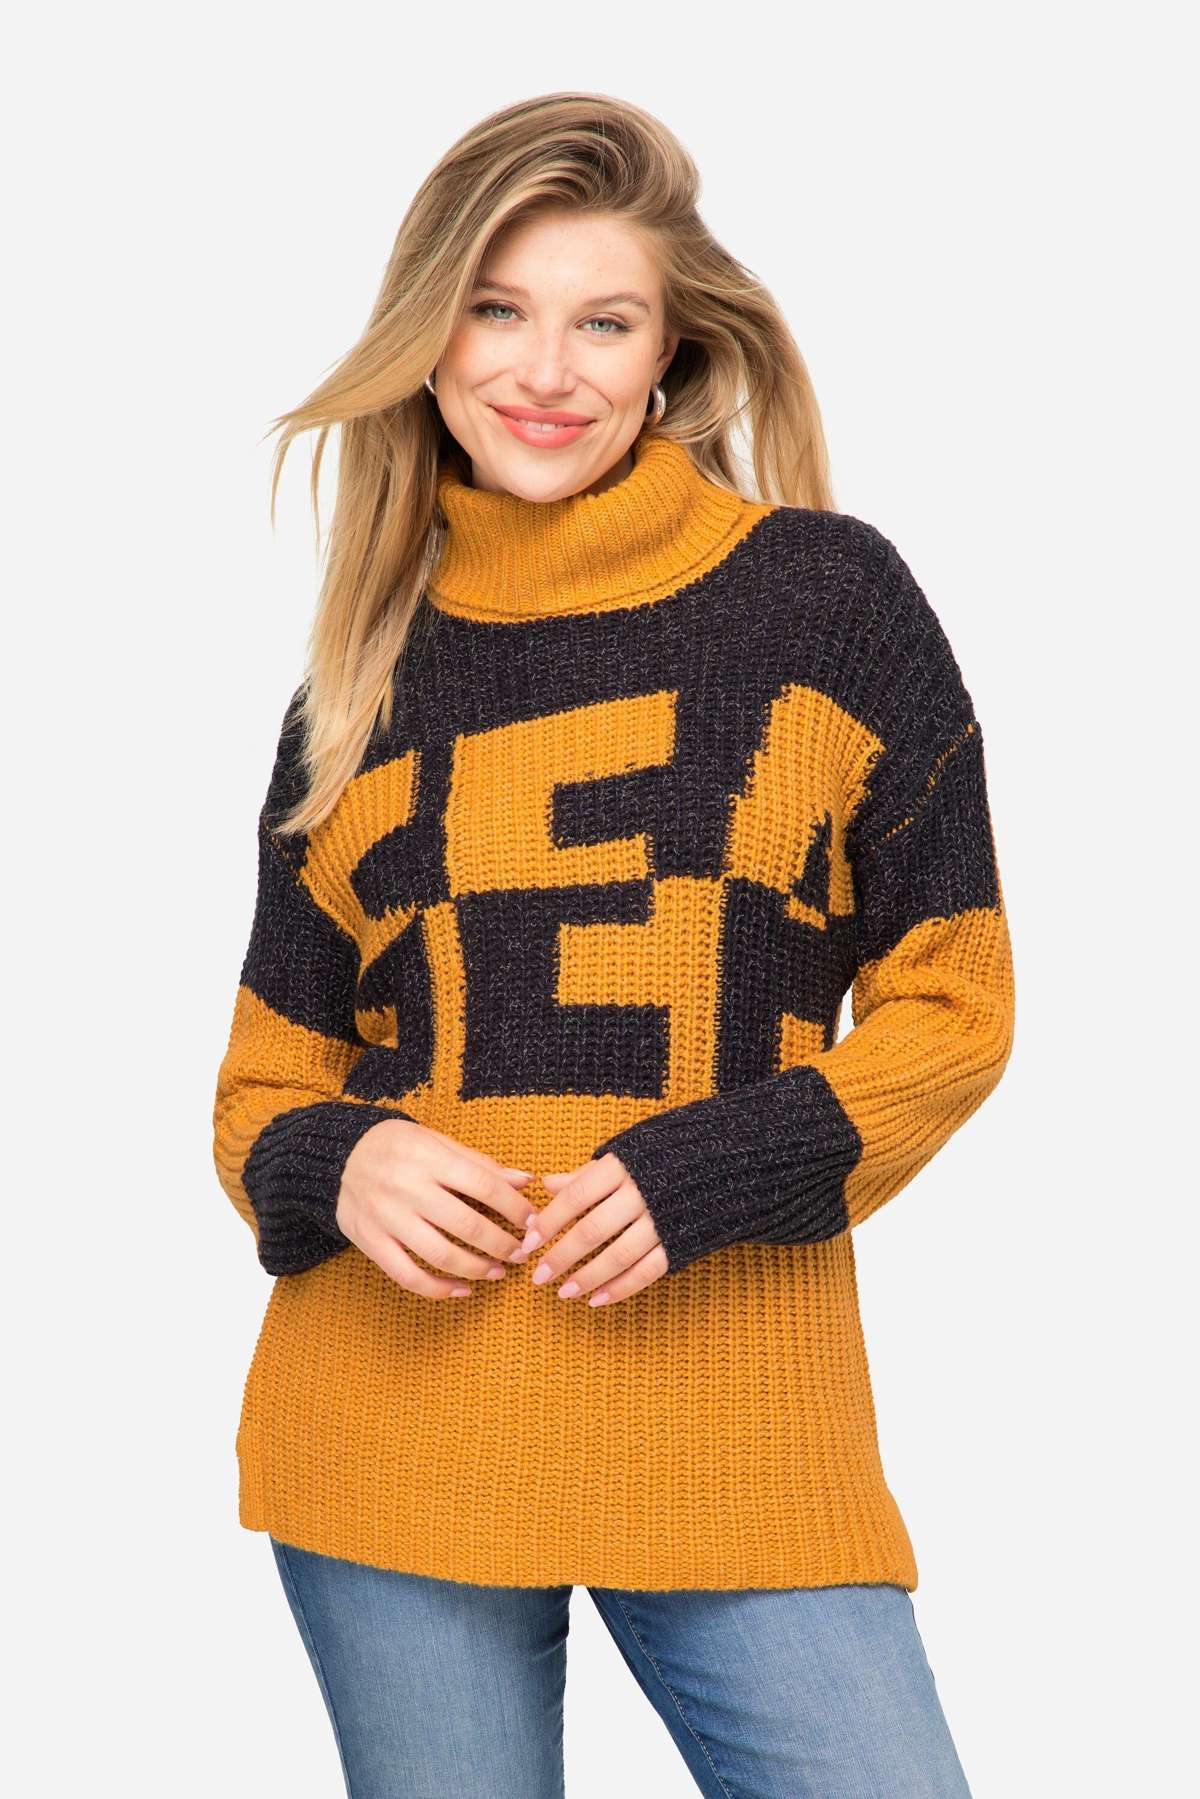 Вязаный свитер-пуловер с колор-блоком надпись SEA двухцветный